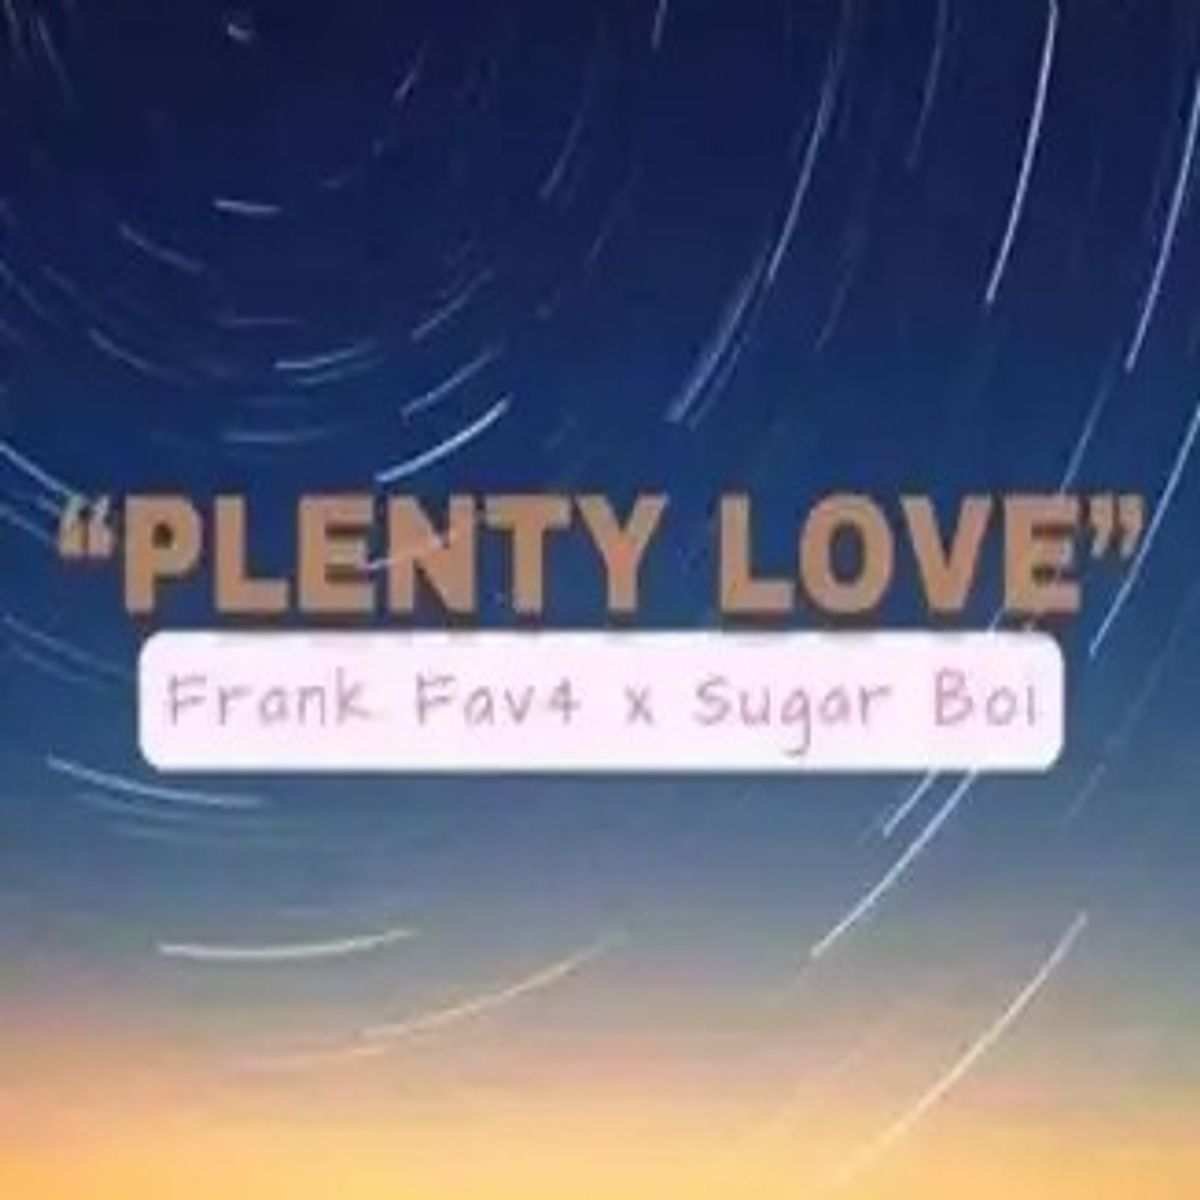 Frankfav4 – Plenty Love Ft Sugarboy